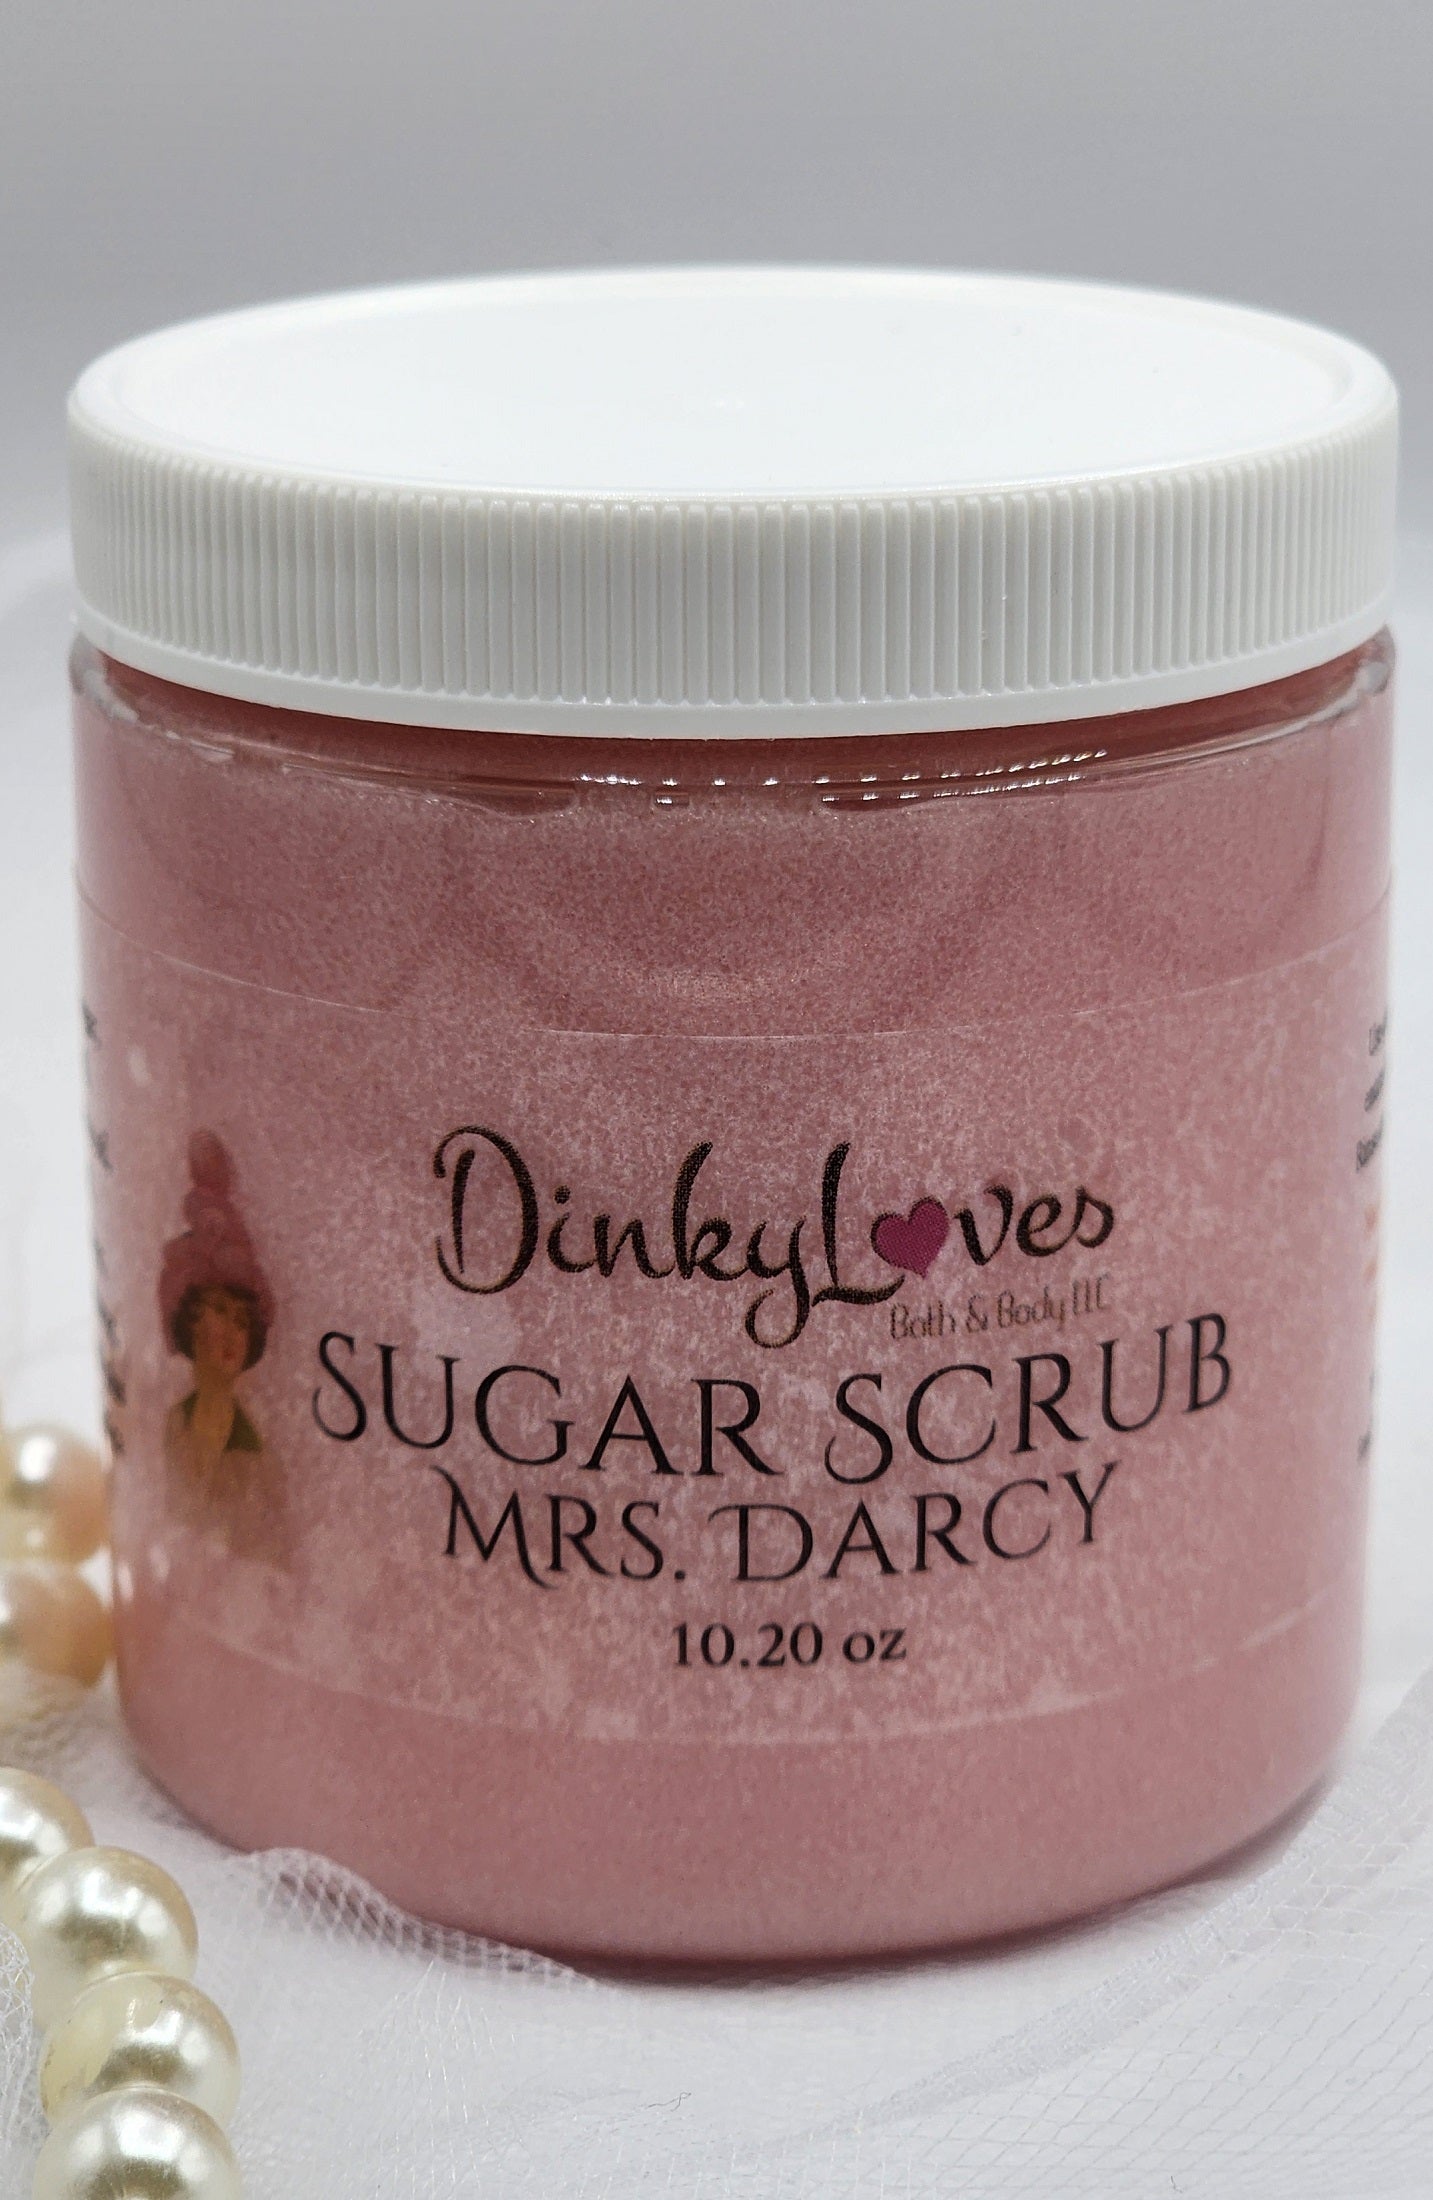 MRS. DARCY / Sugar Scrub / Unique Gift Idea / Handmade Sugar Scrub